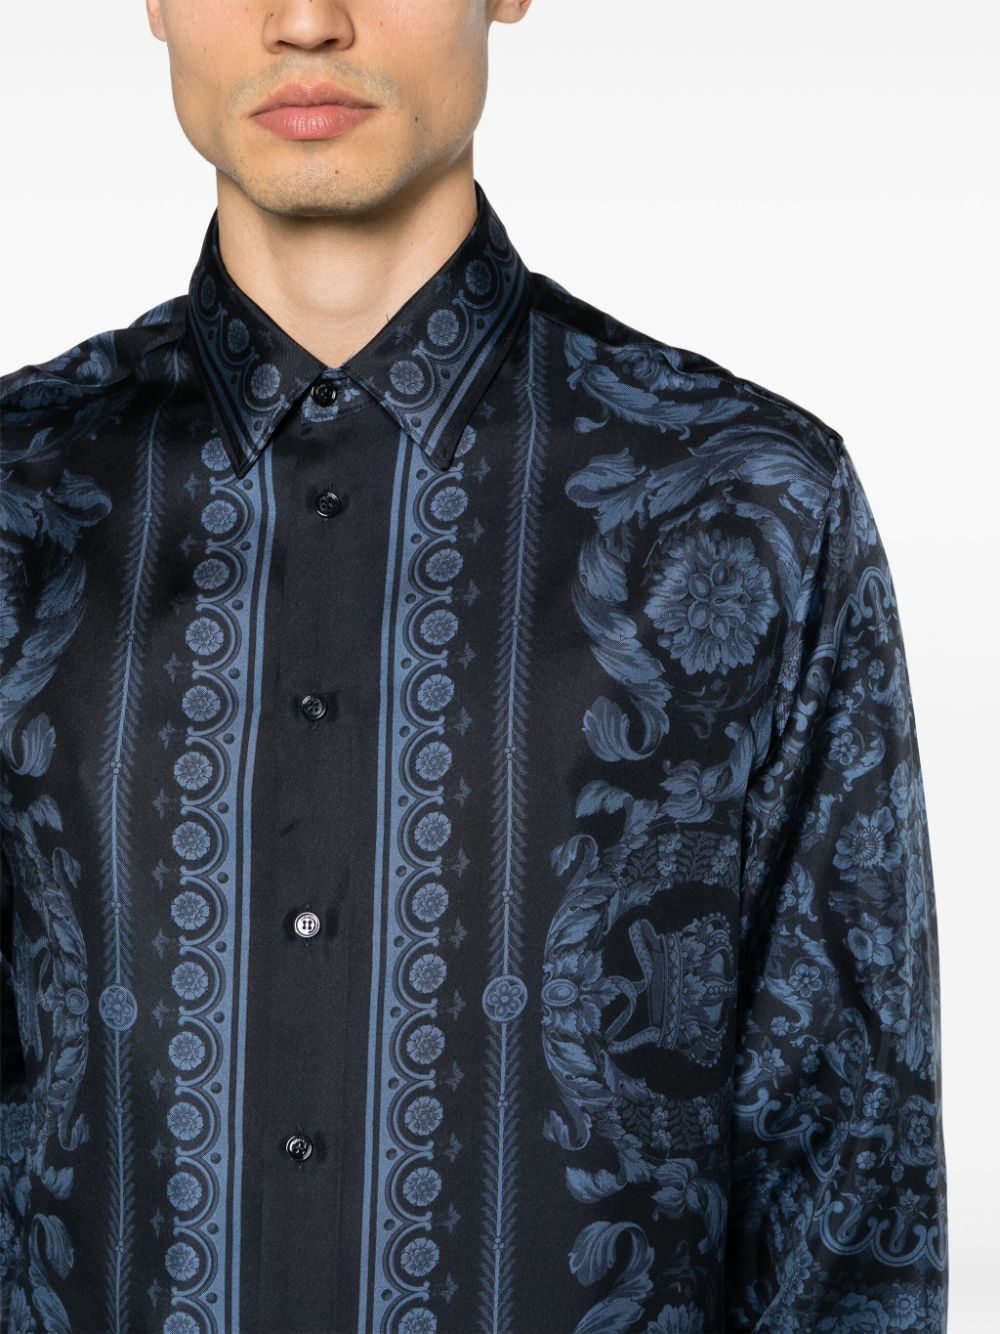 男装丝绸条纹印花蓝色衬衫